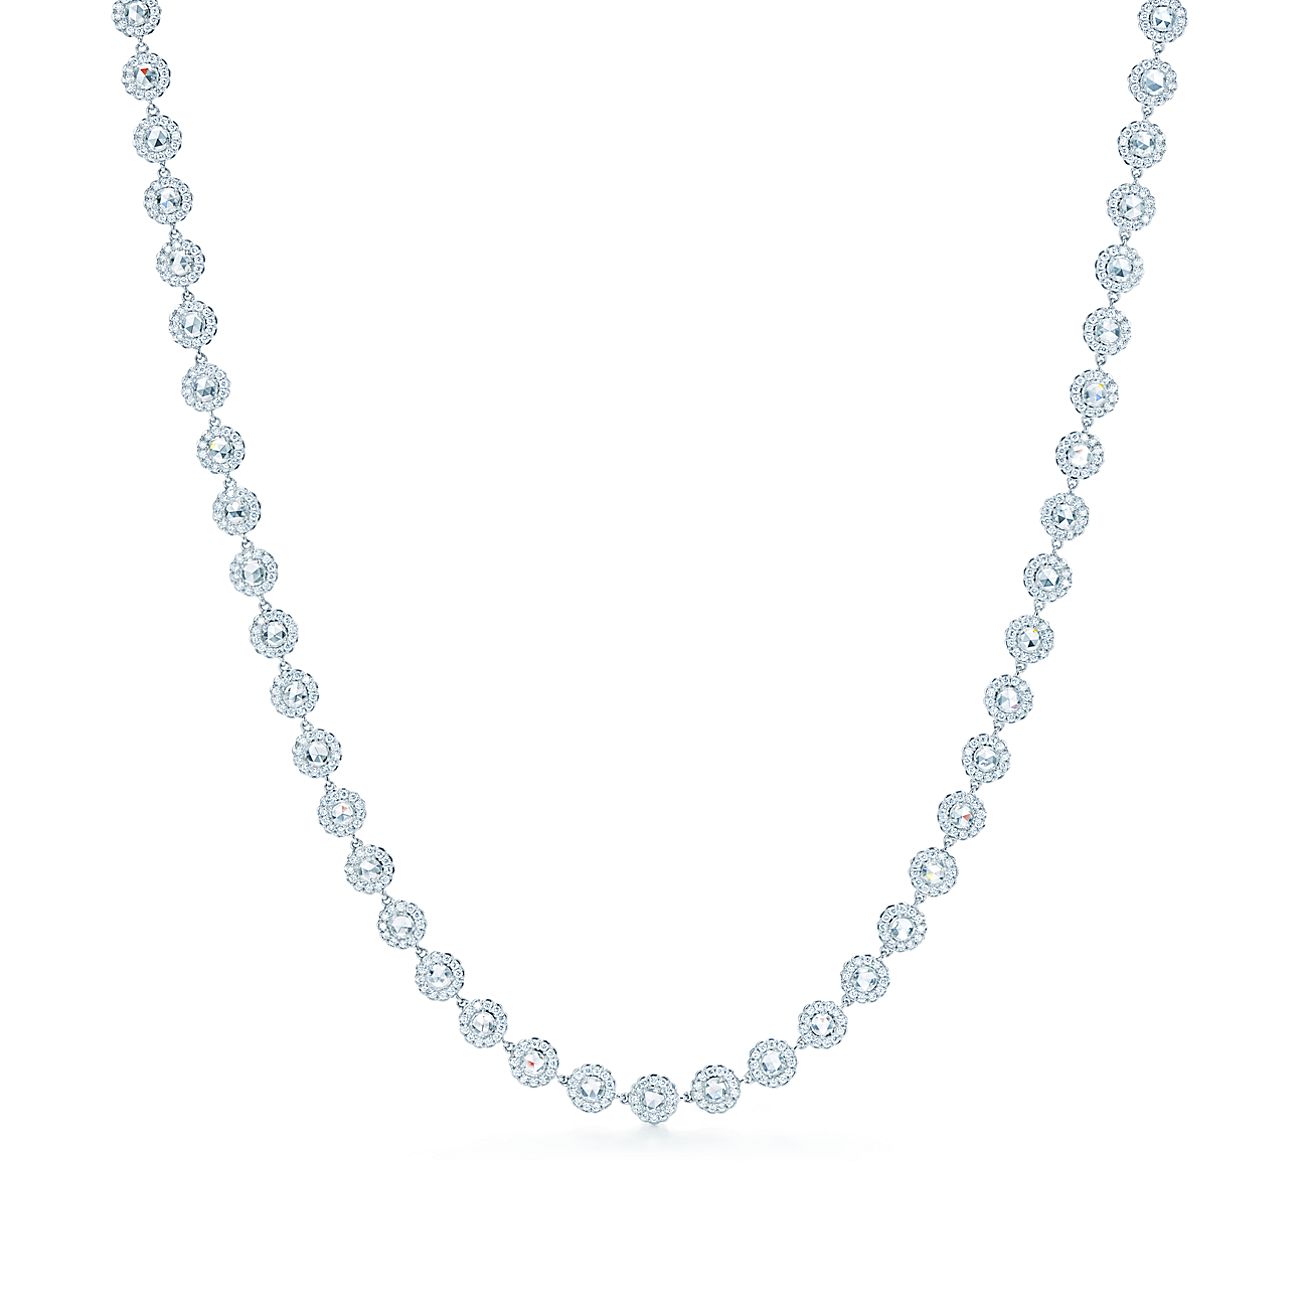 Tiffany Cobblestone necklace in 